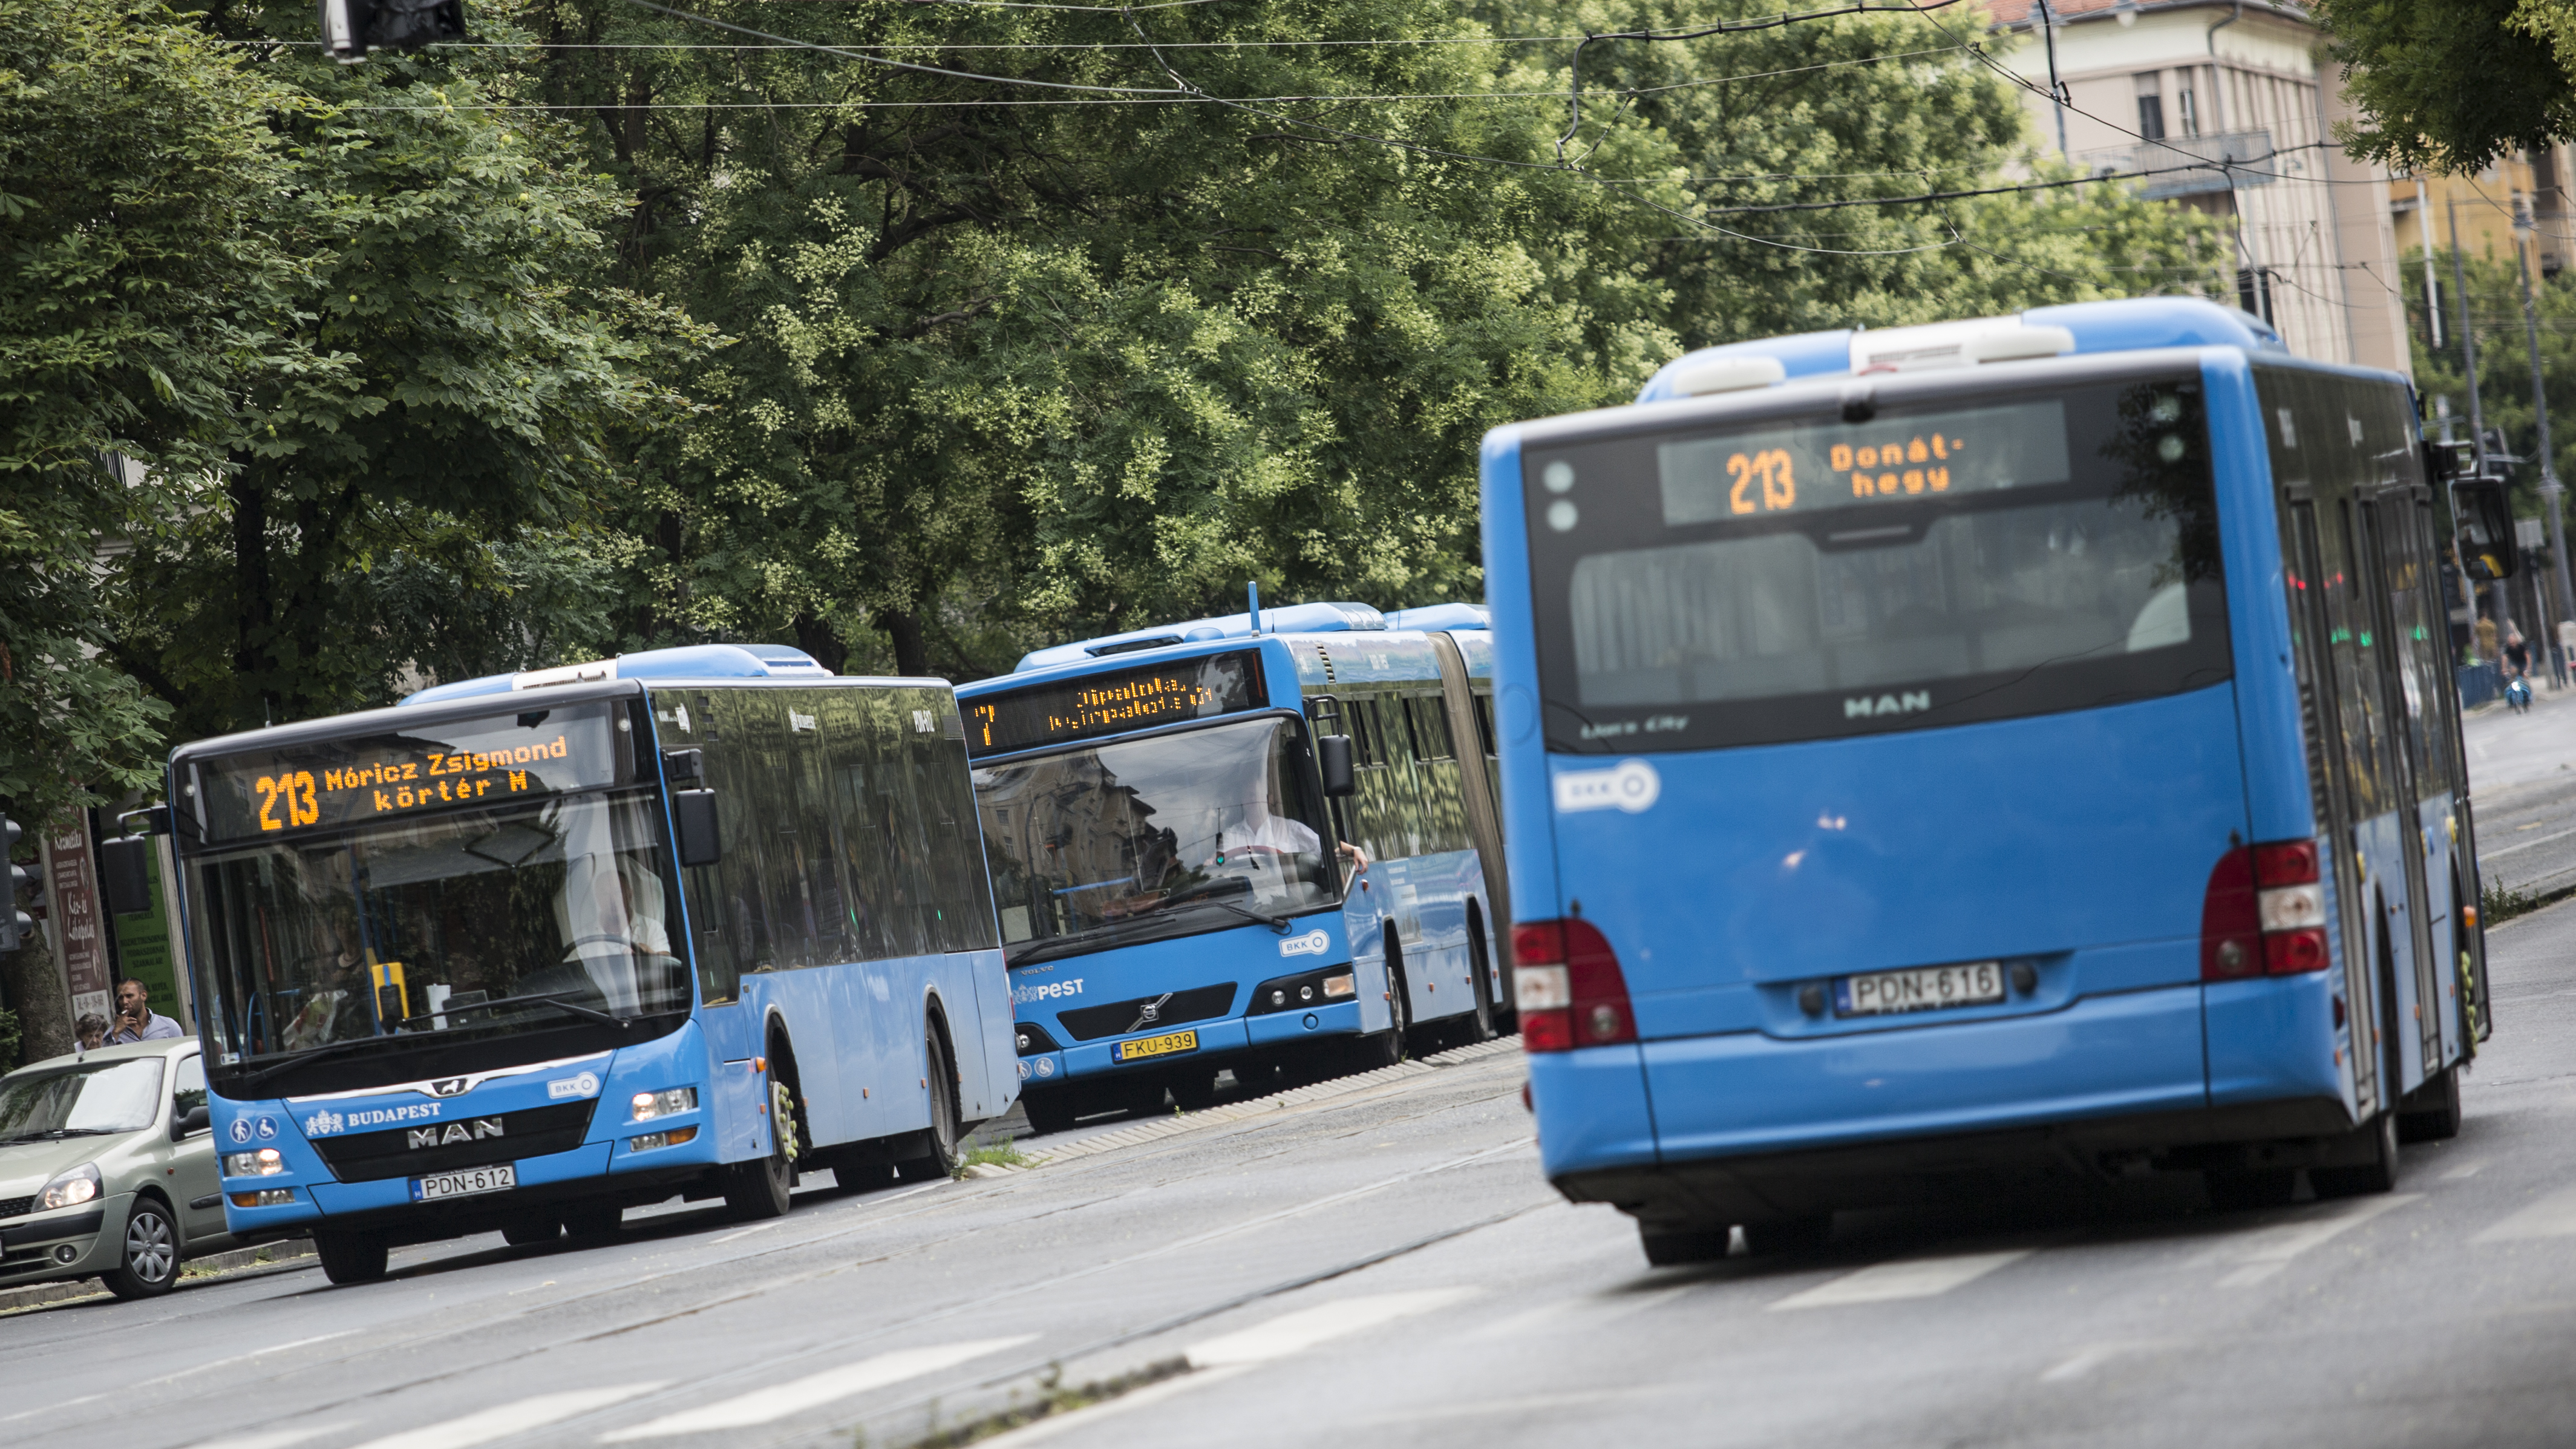 Főváros: A buszokról szóló támogatási szerződés megkötése folyamatban van